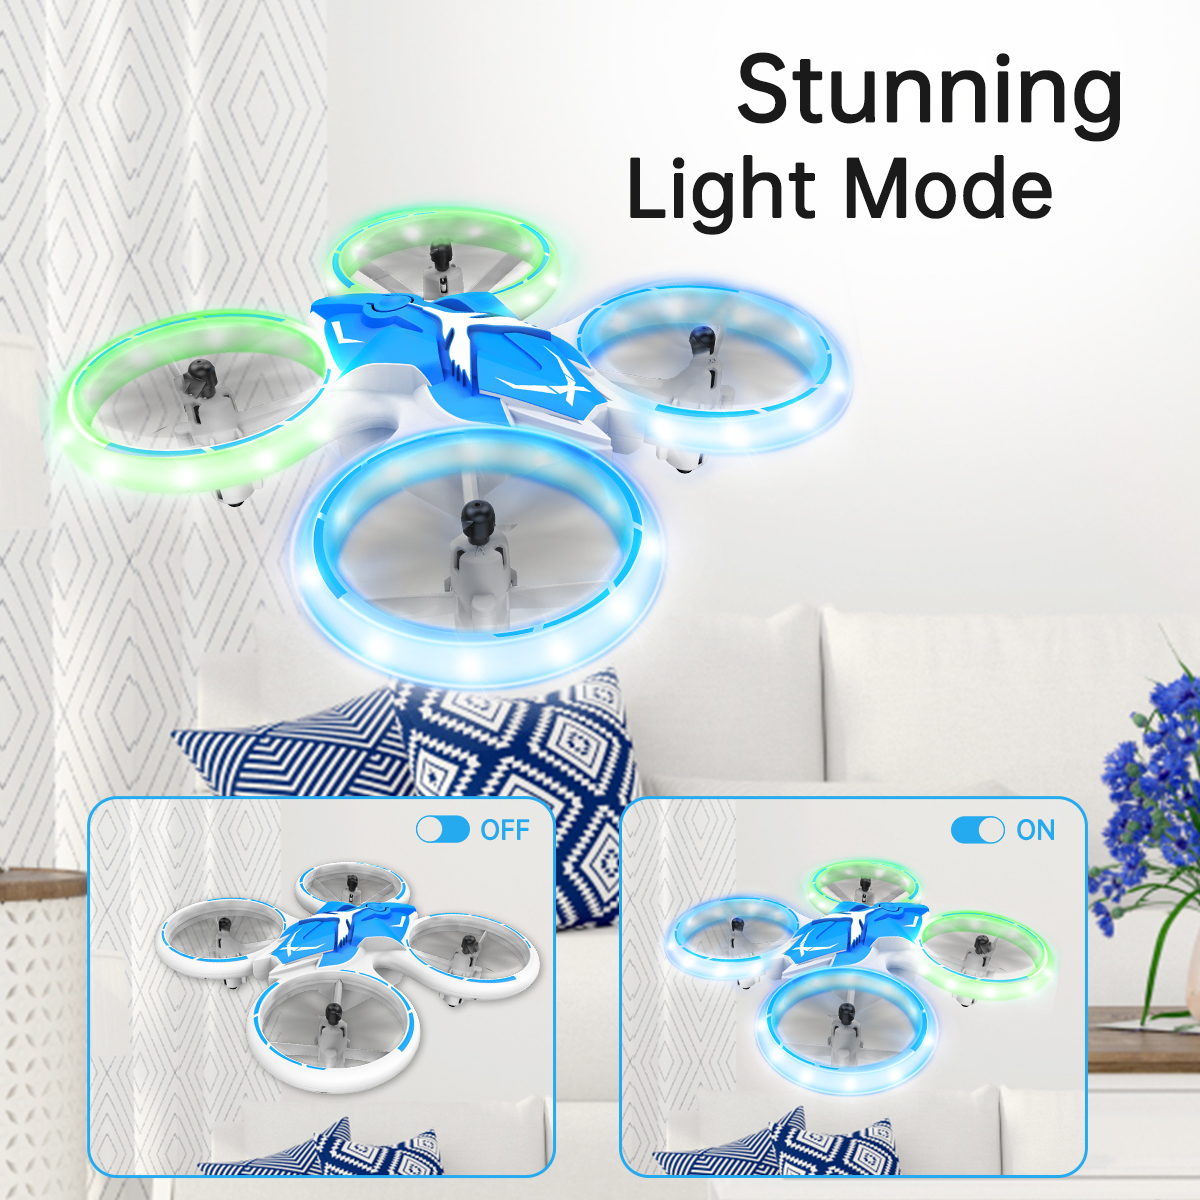 LED Night Light Mini Drone for Kids